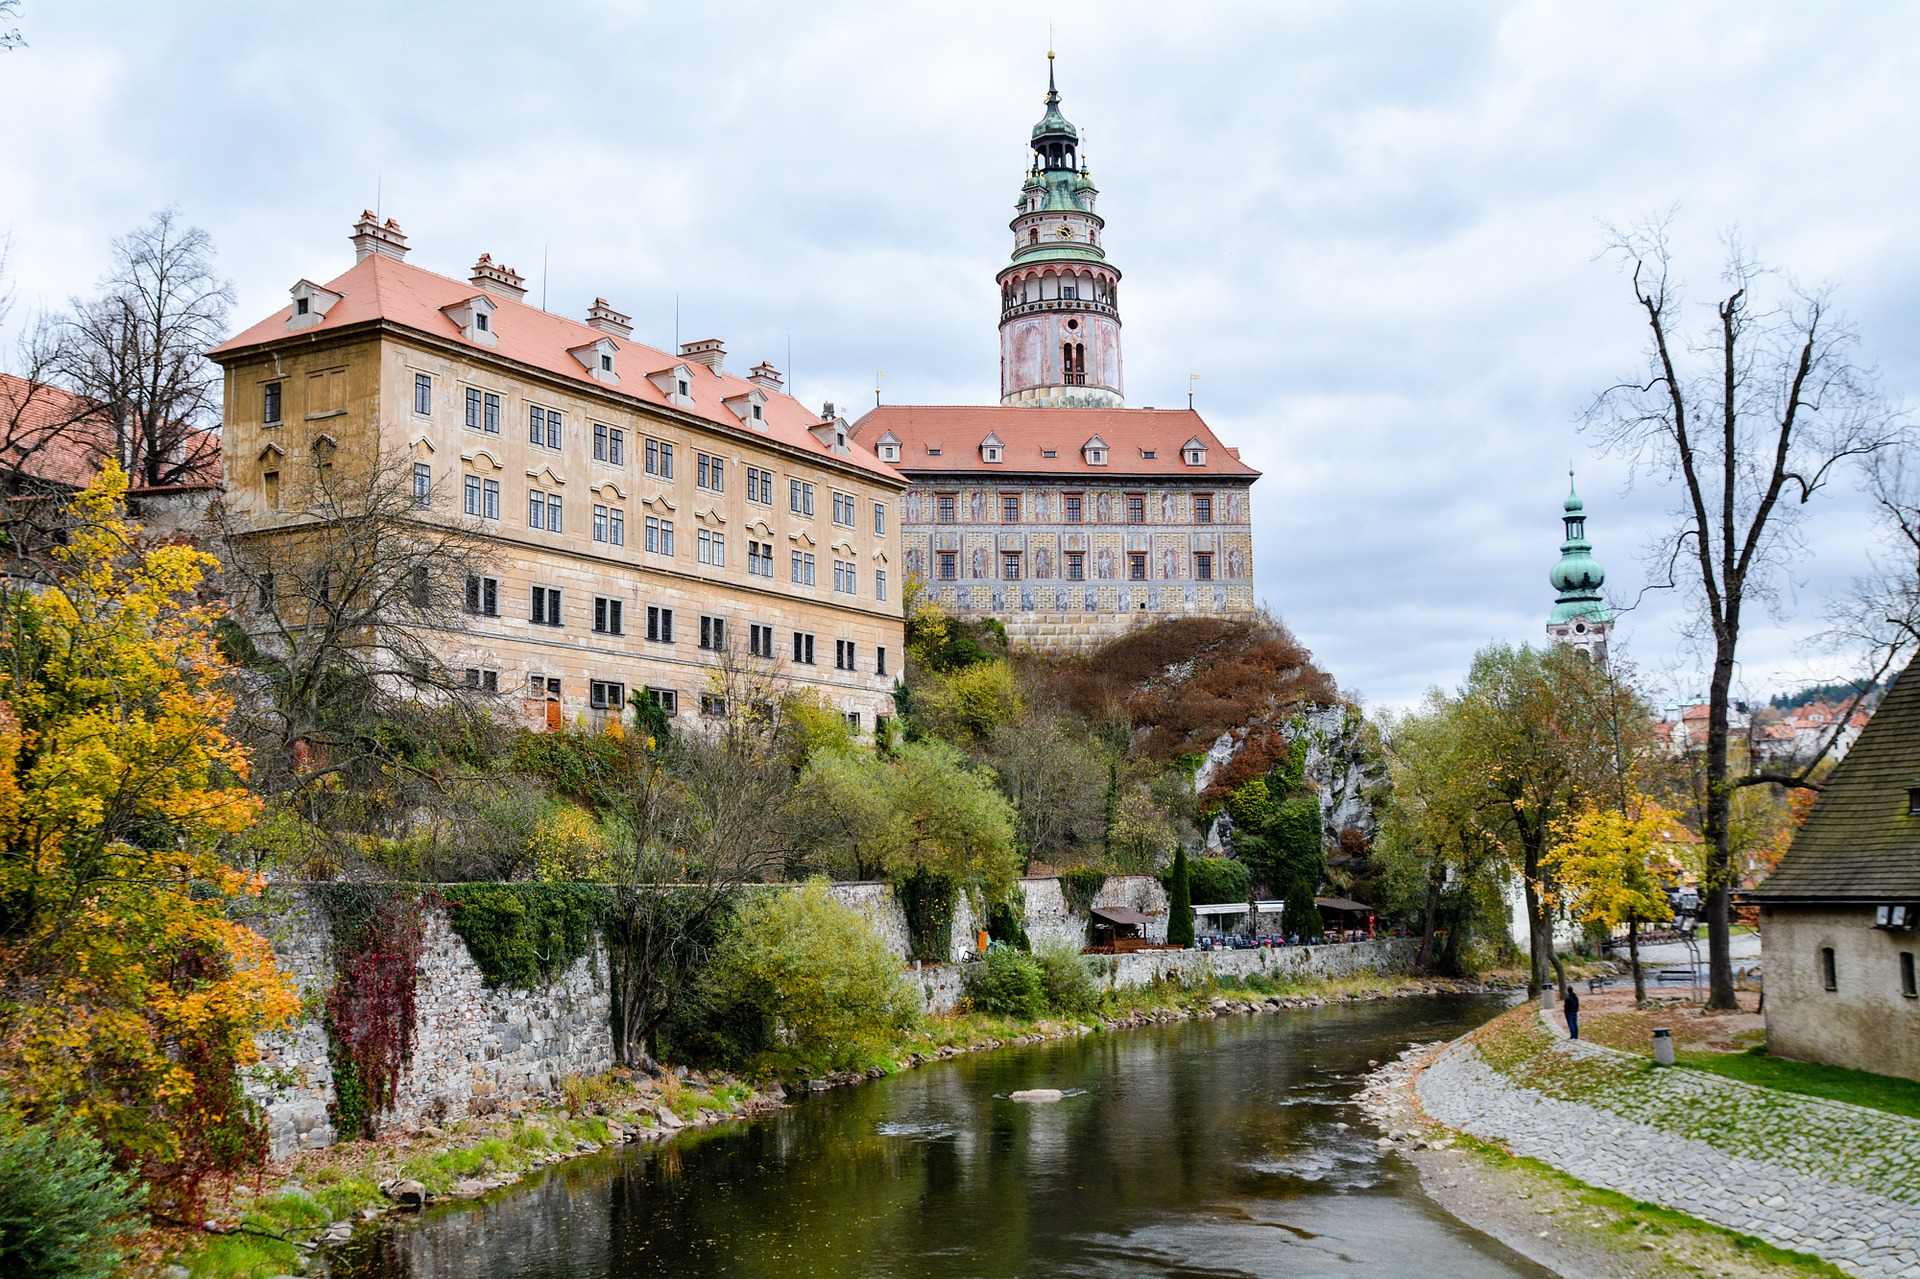 دليل السياحة الشامل لبلدة تشيسكي كروملوف في التشيك